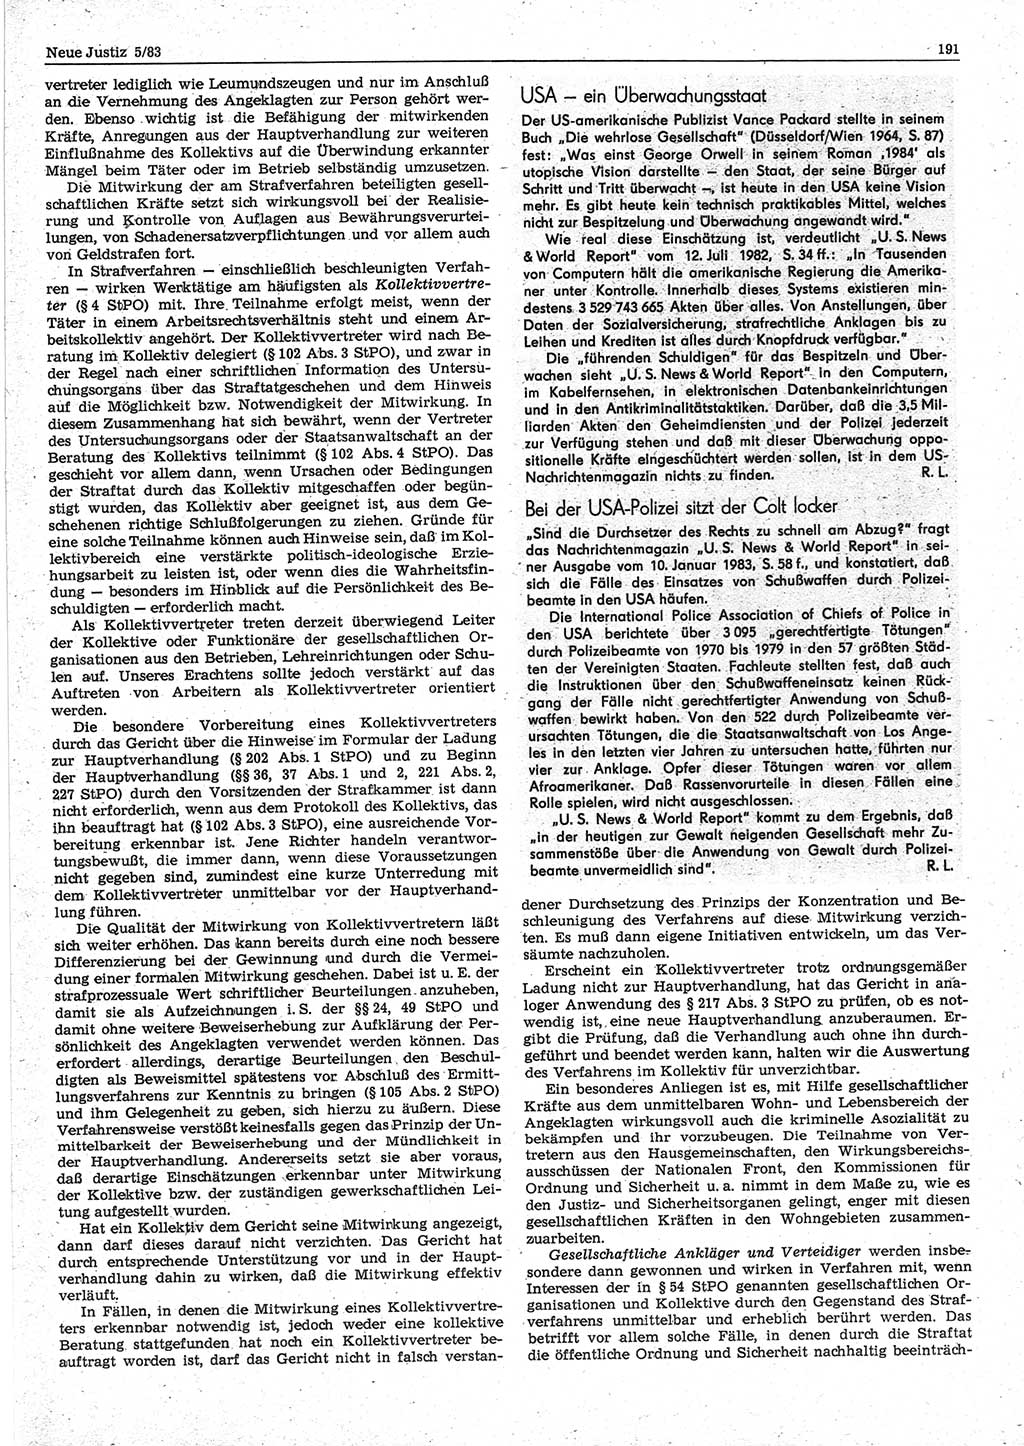 Neue Justiz (NJ), Zeitschrift für sozialistisches Recht und Gesetzlichkeit [Deutsche Demokratische Republik (DDR)], 37. Jahrgang 1983, Seite 191 (NJ DDR 1983, S. 191)